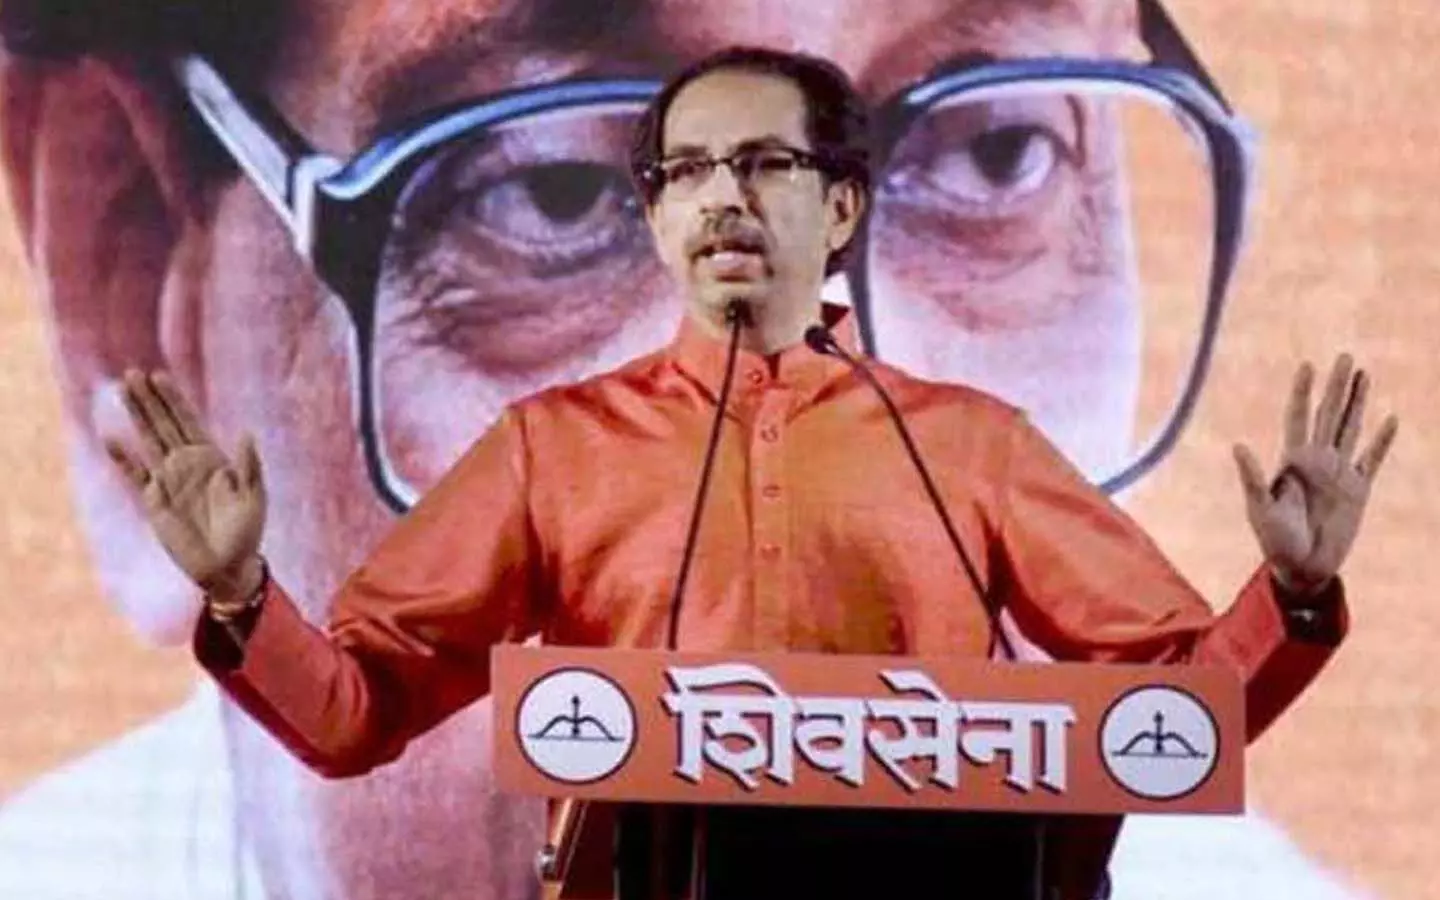 Maharashtra: Uddhav Thackeray roared fiercely in Mumbai rally, told BJP a donkey in gestures